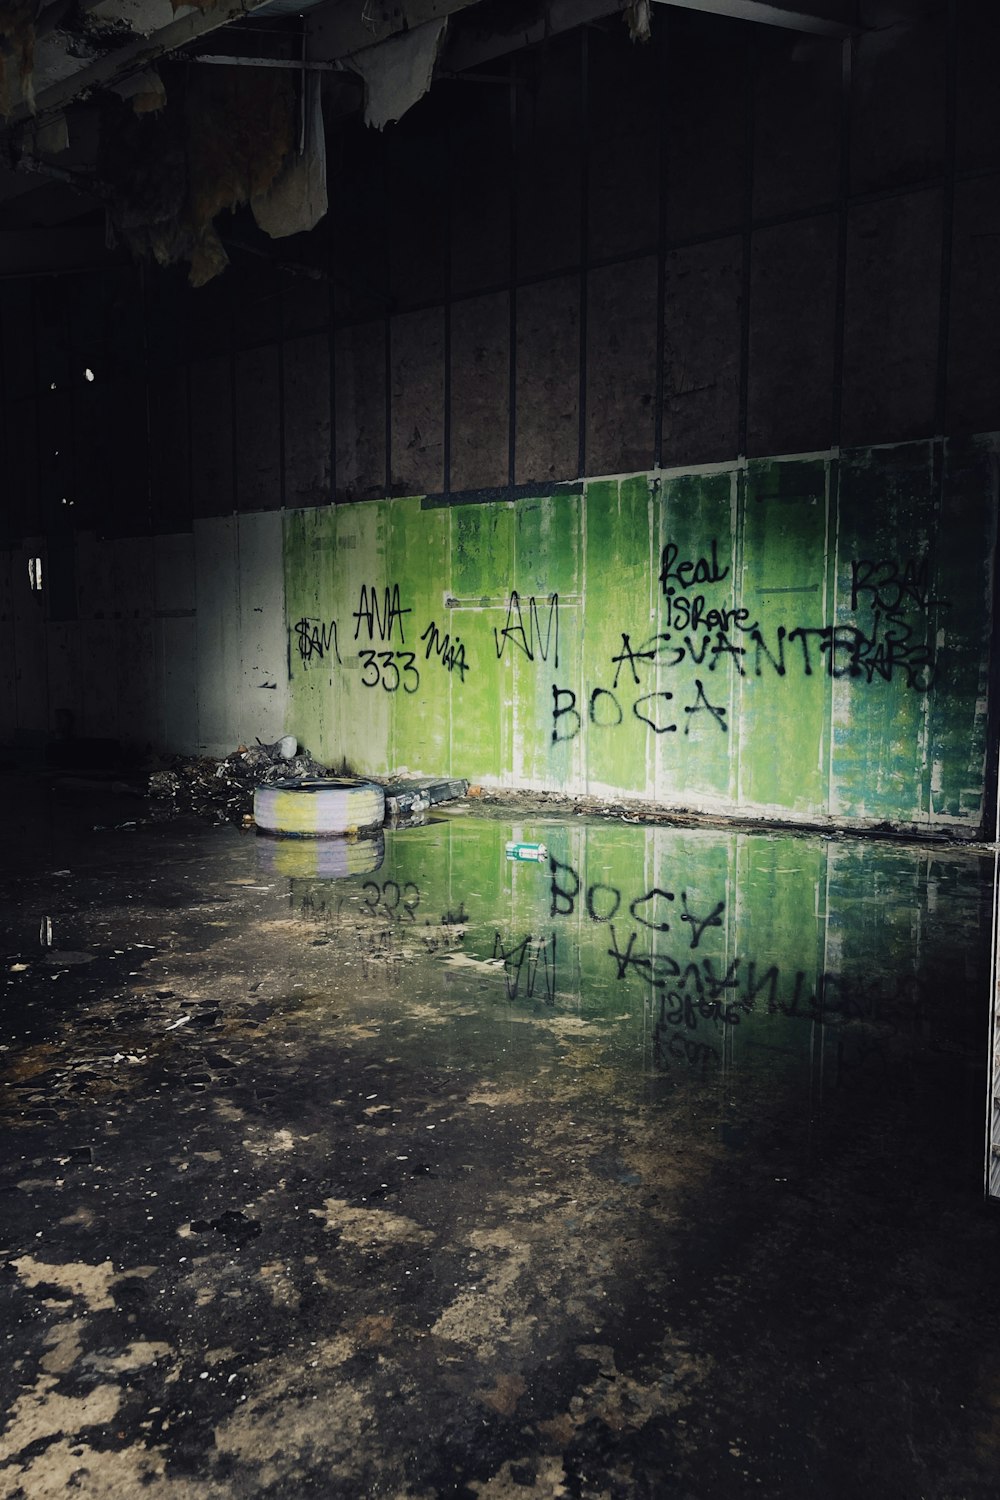 Una stanza sporca con graffiti sui muri